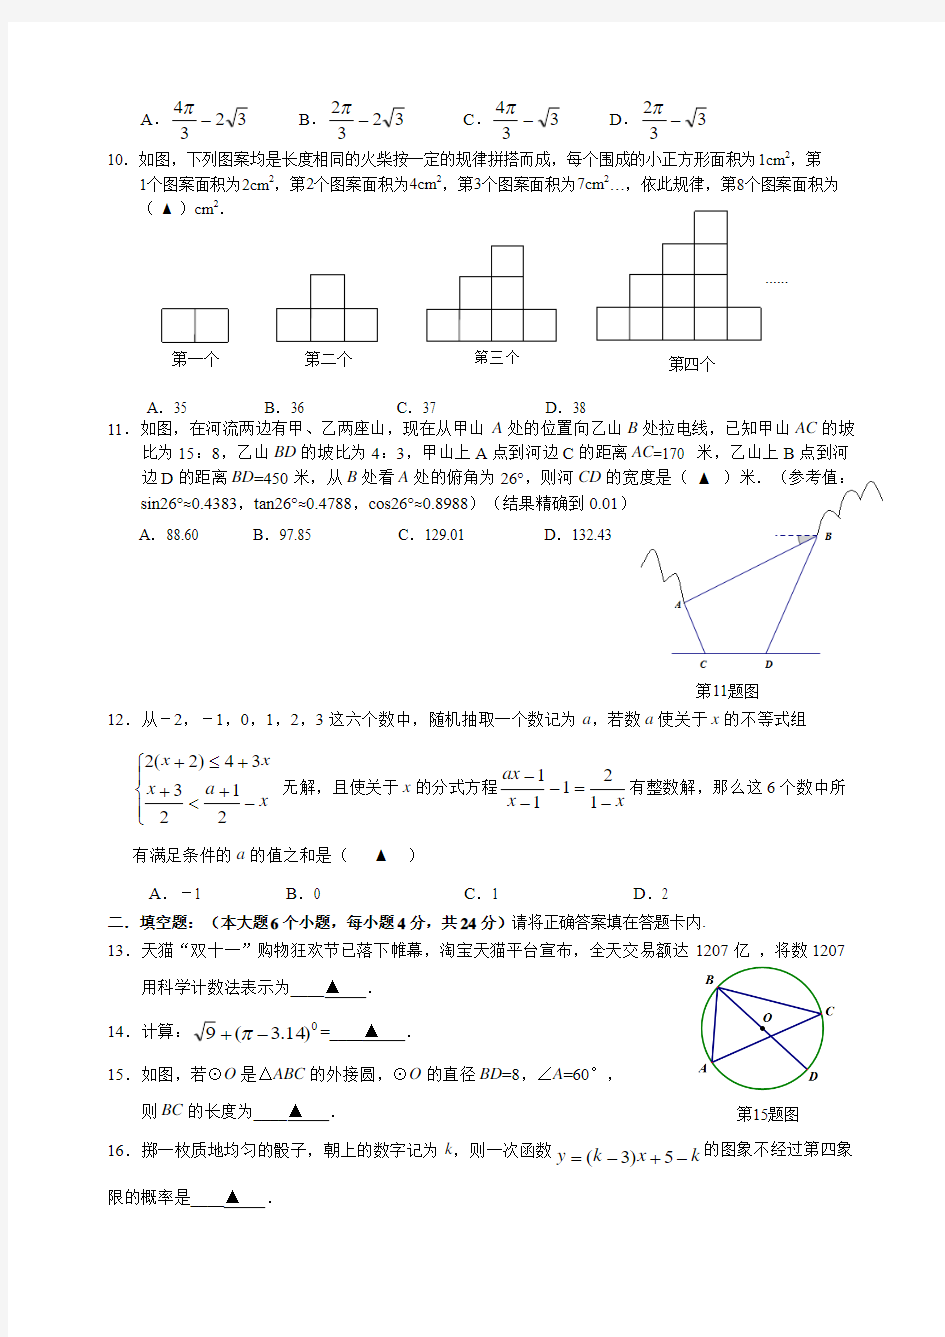 重庆一中初2017级16—17学年度上期第二次定时作业数学试题及参考答案